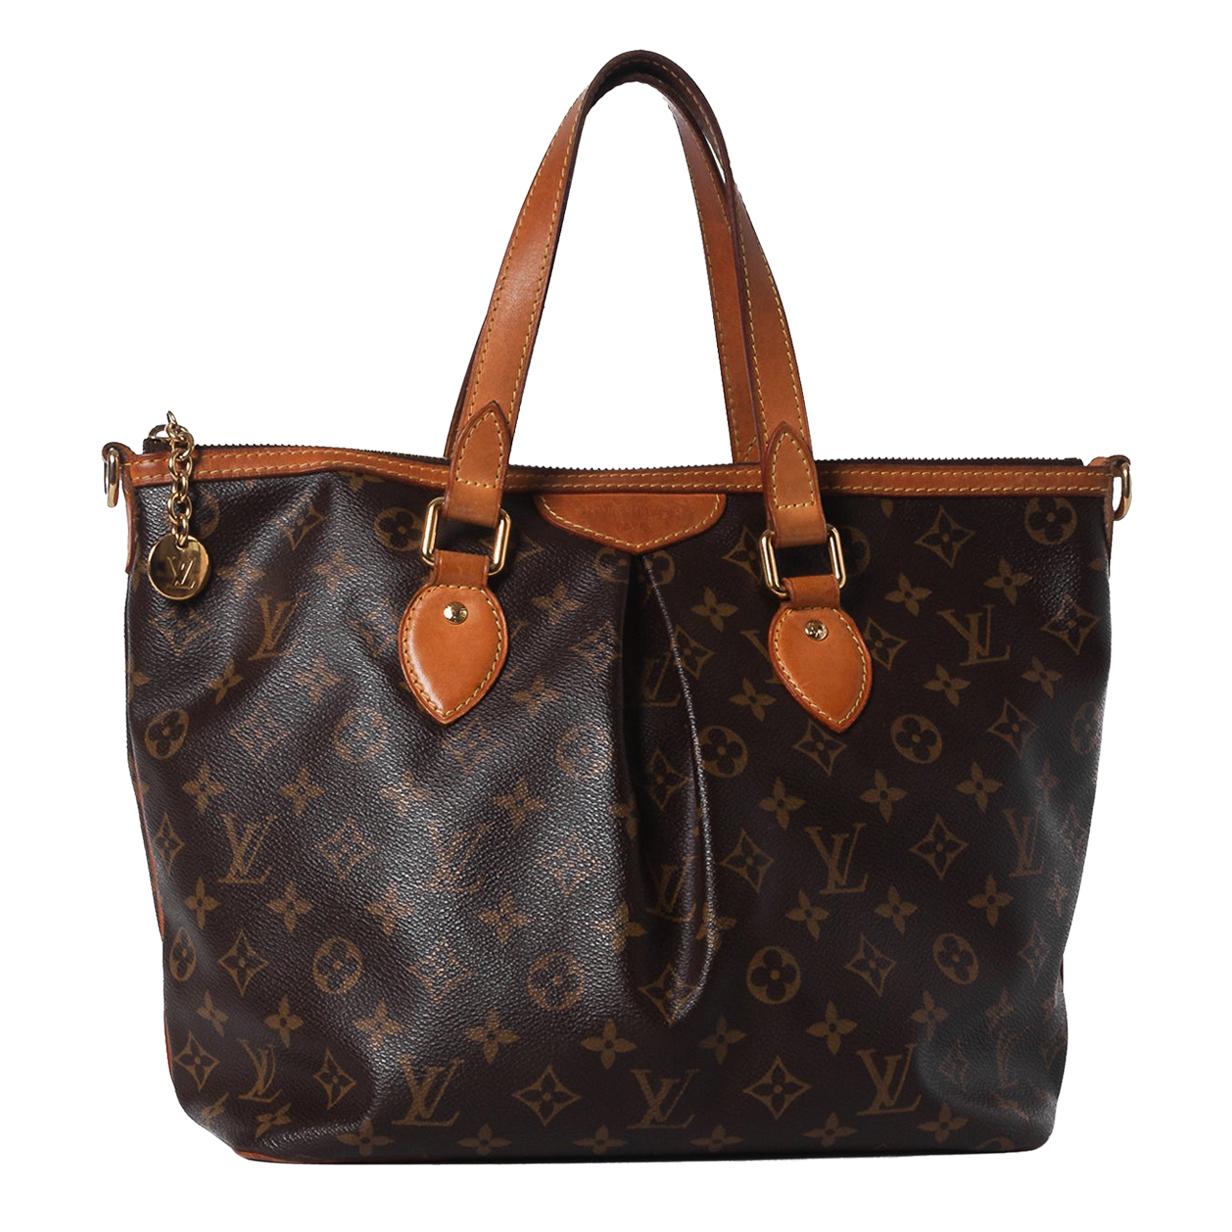 Does Louis Vuitton make black purses?